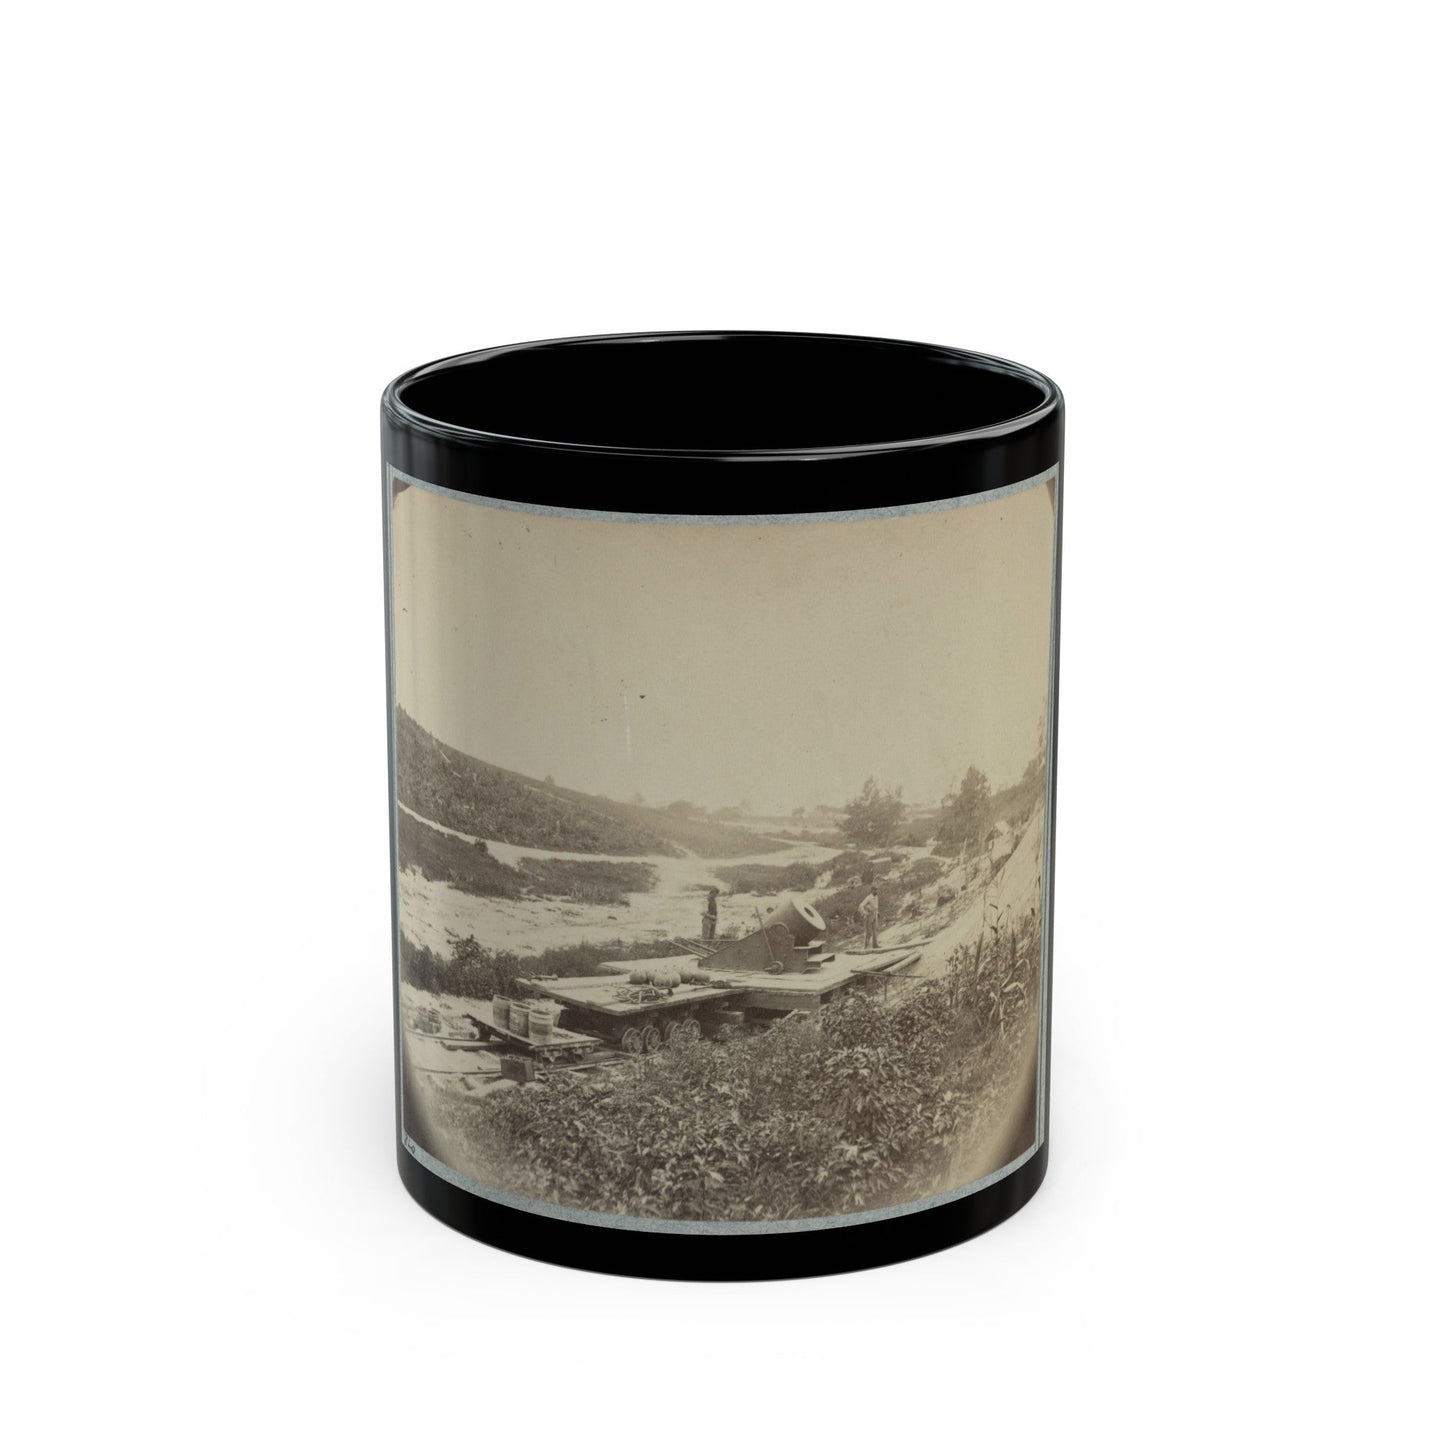 Petersburg, Va., Sept. 1864, 13-Inch Mortar Dictator (U.S. Civil War) Black Coffee Mug